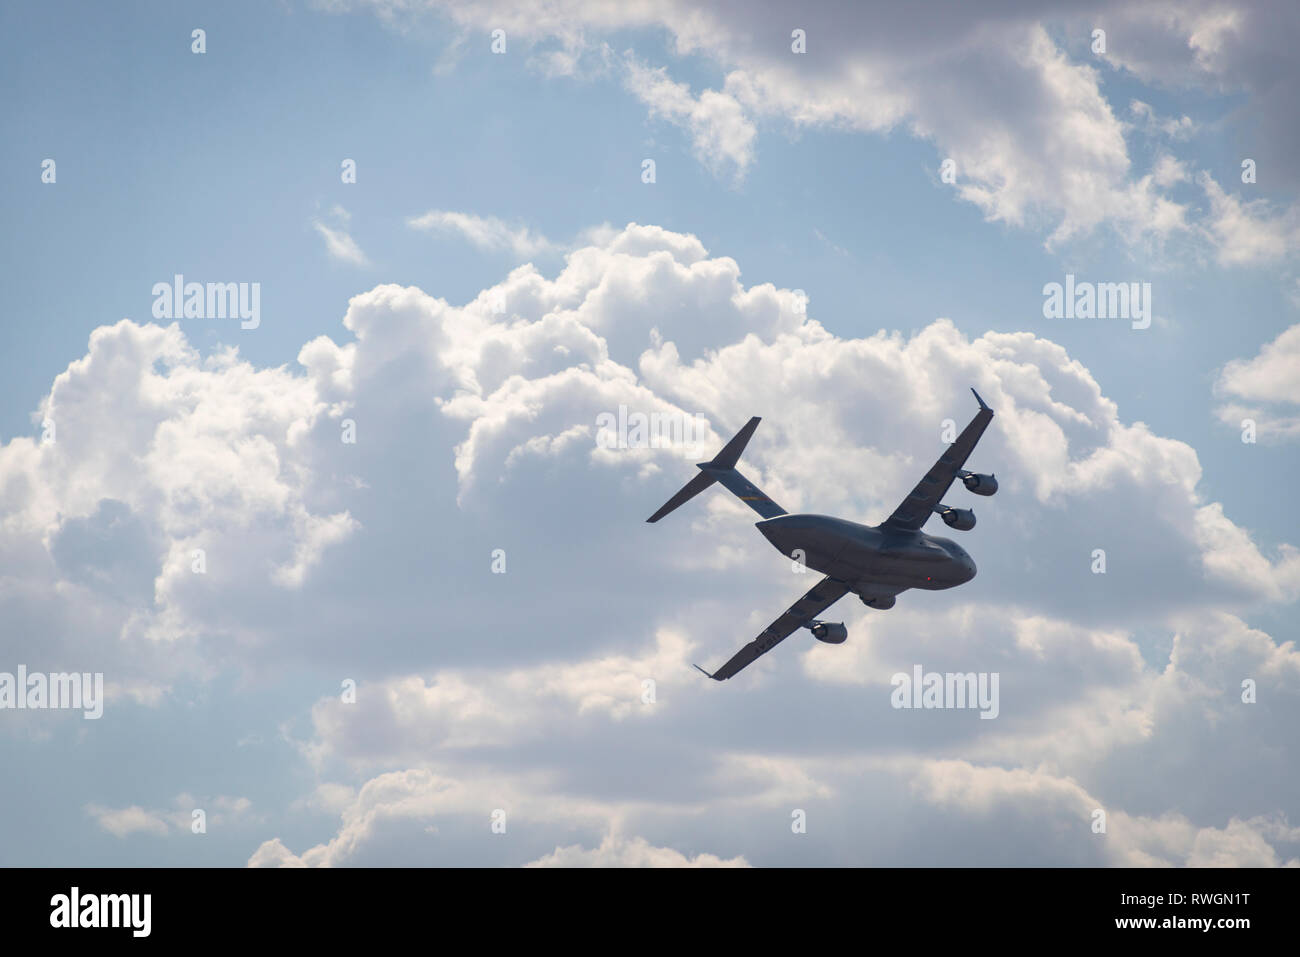 Eine Boeing C-17 Globemaster III im Flug, Banken gegen einen bewölkten Himmel Stockfoto